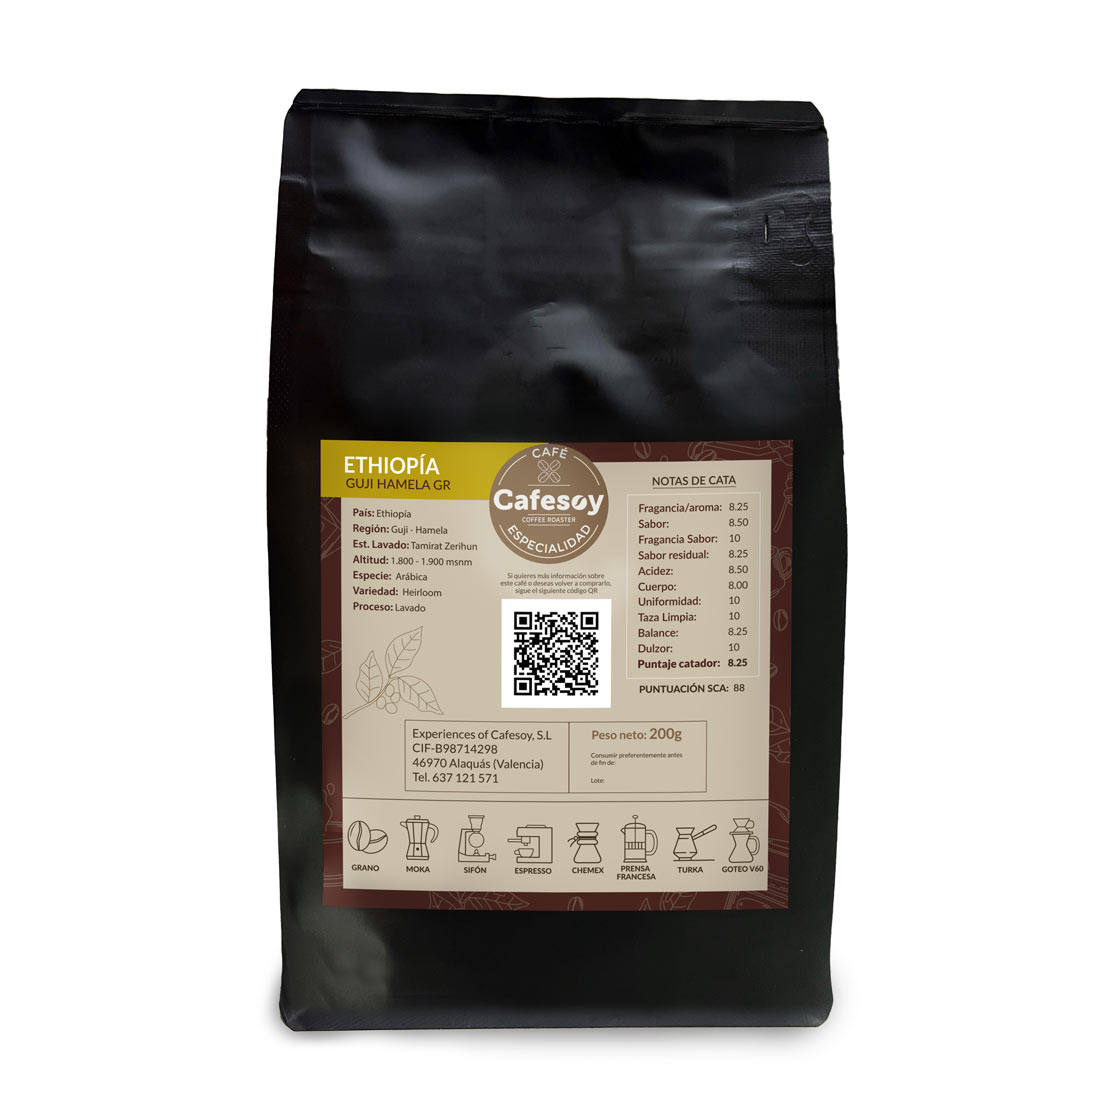 1-comprar-cafe-seleccion-especialidad-ethiopia-online-precio-calidad-cafesoy-v2